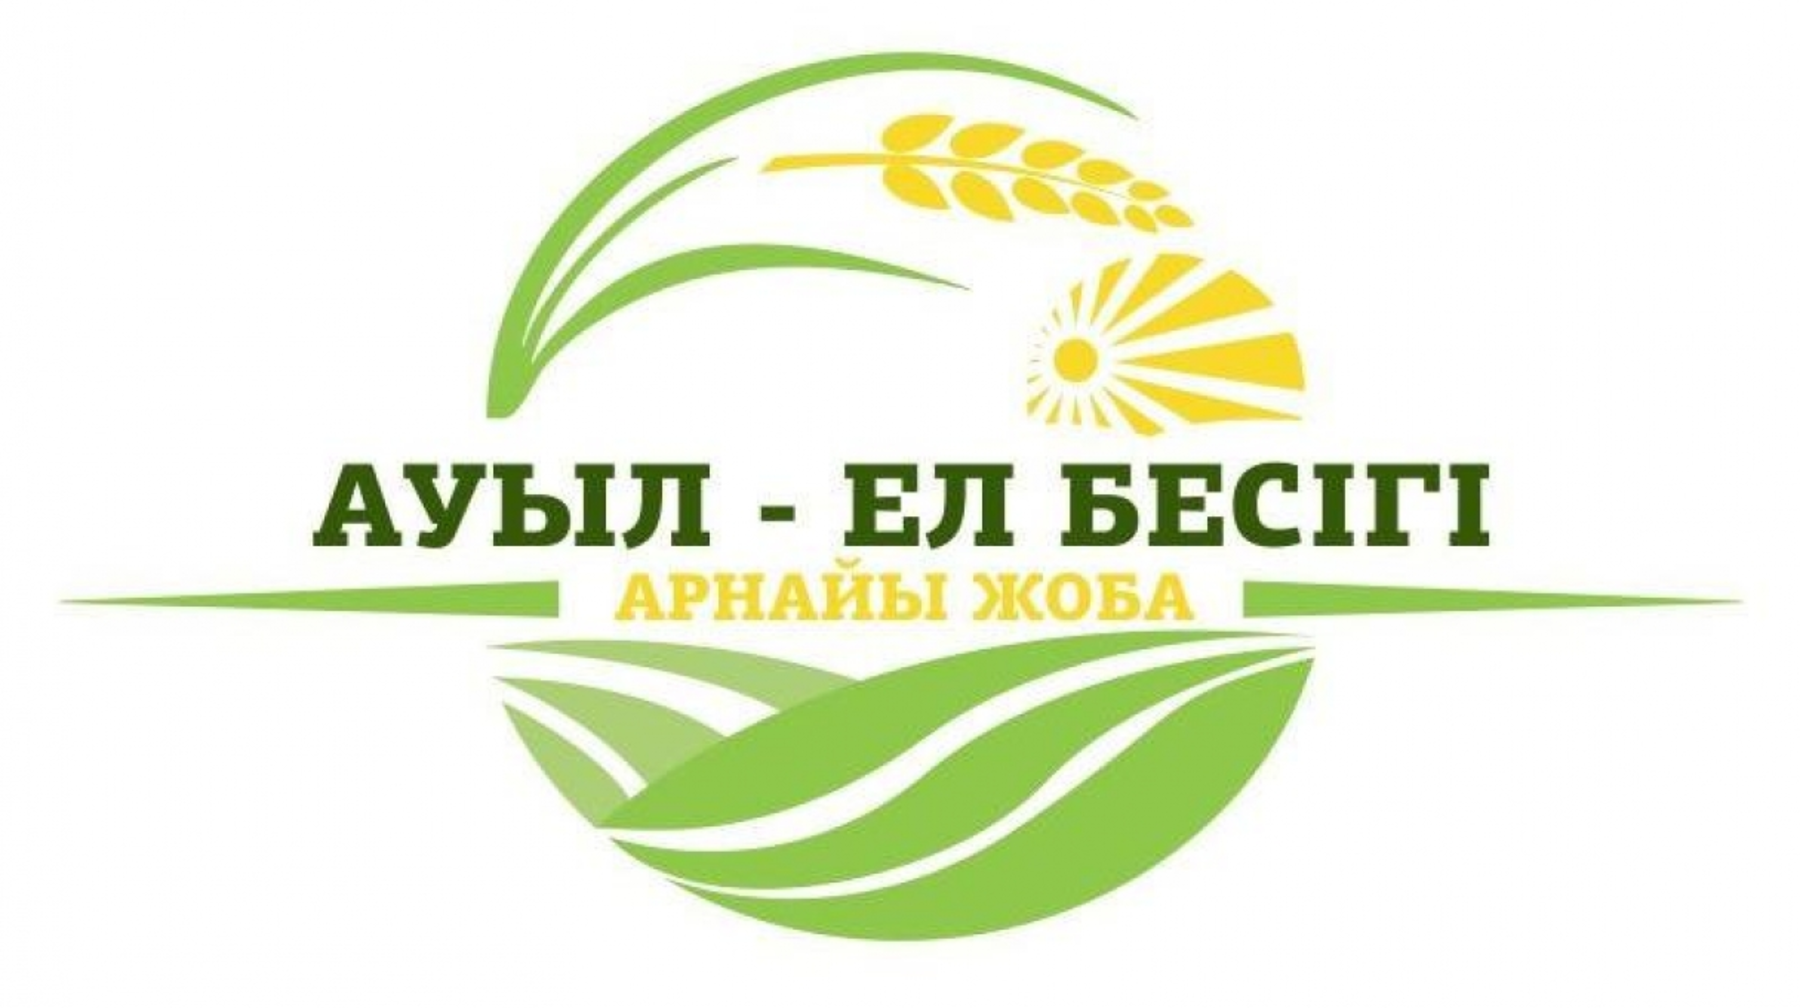 Нарушения в госпрограмме «Ауыл - Ел бесігі» выявили в Павлодарской области 